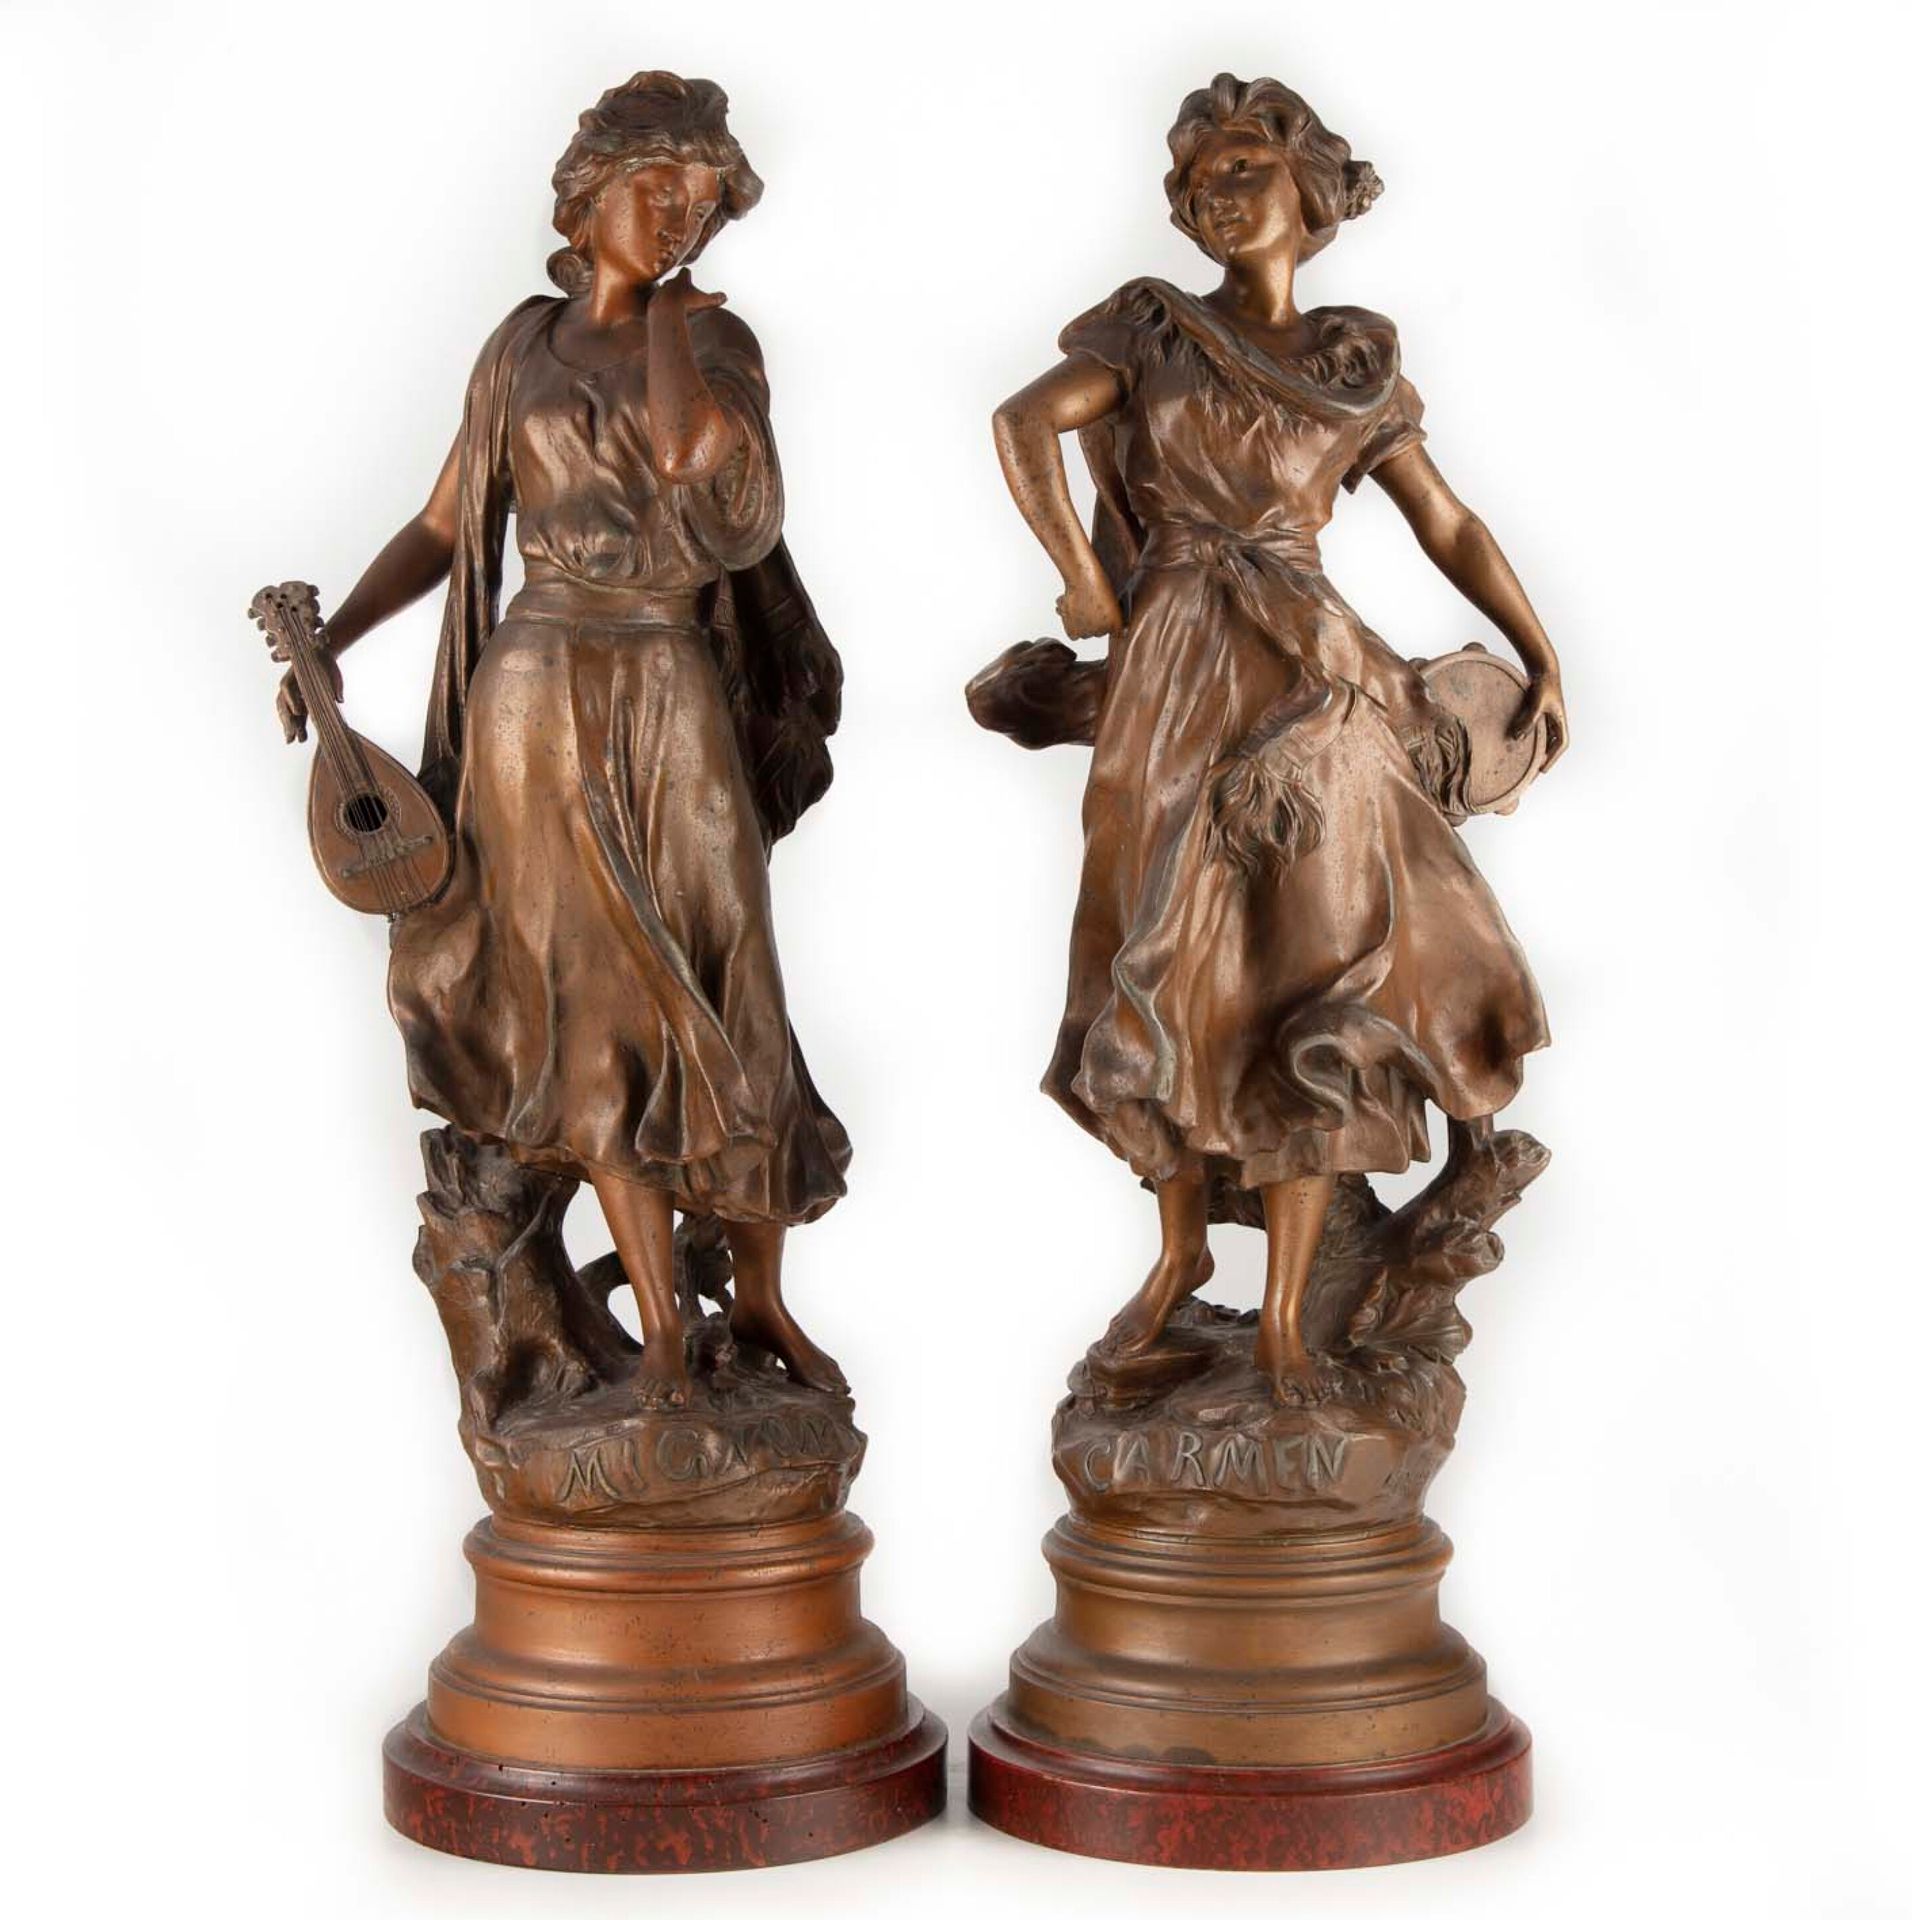 LUCA MADRASSI Luca MADRASSI (1848 - 1919 )

Carmen and Mignon

Pair of sculpture&hellip;